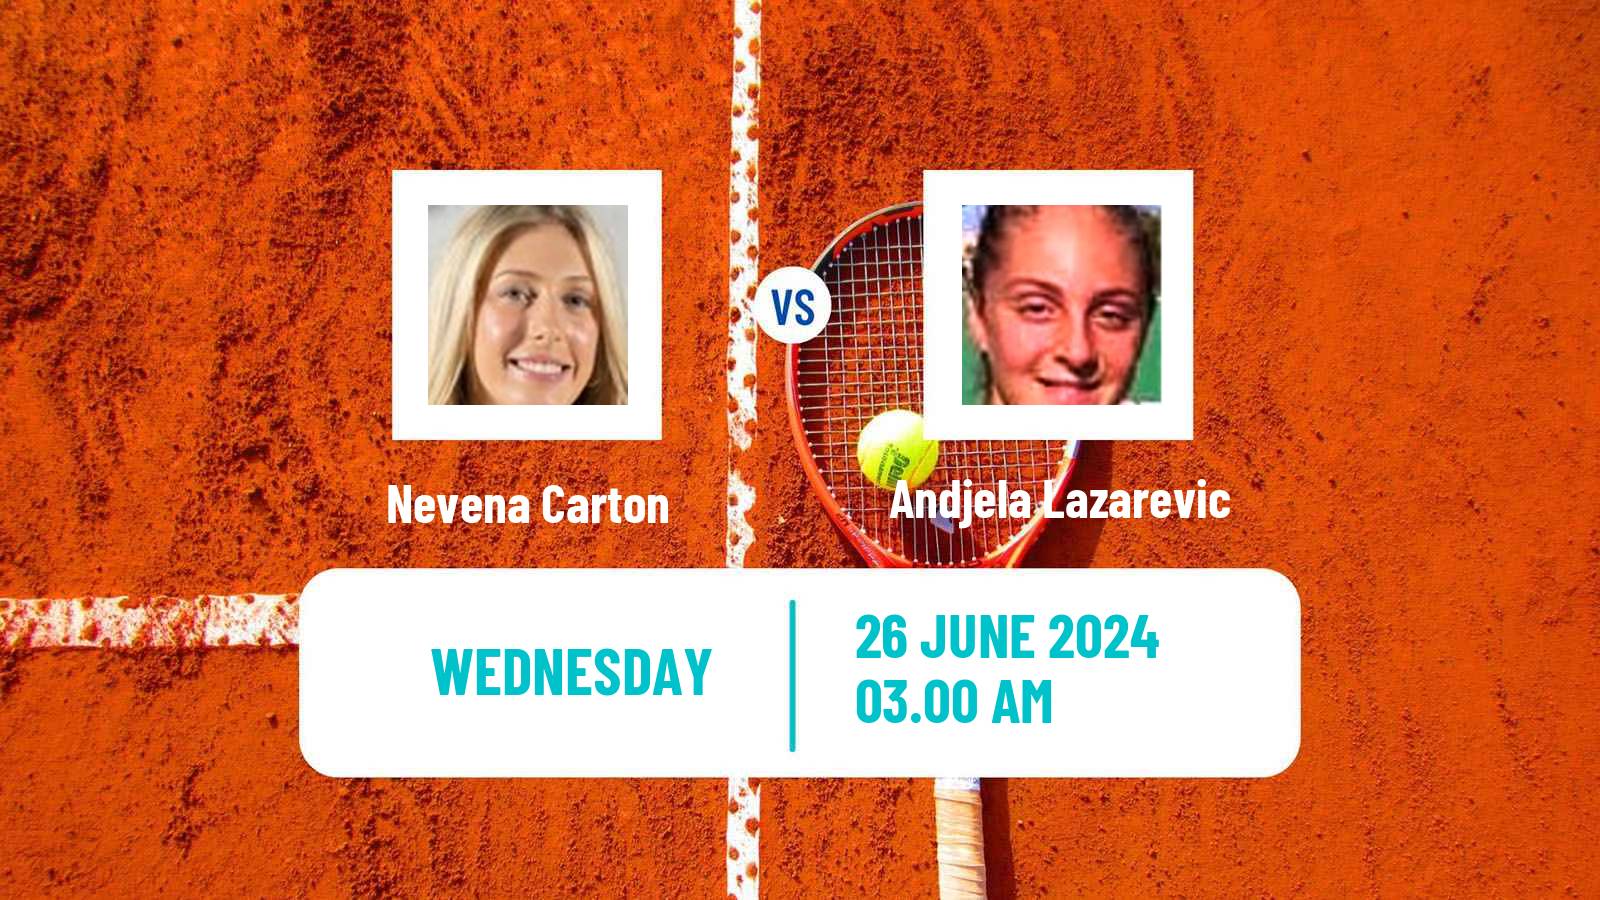 Tennis ITF W15 Kursumlijska Banja 12 Women Nevena Carton - Andjela Lazarevic